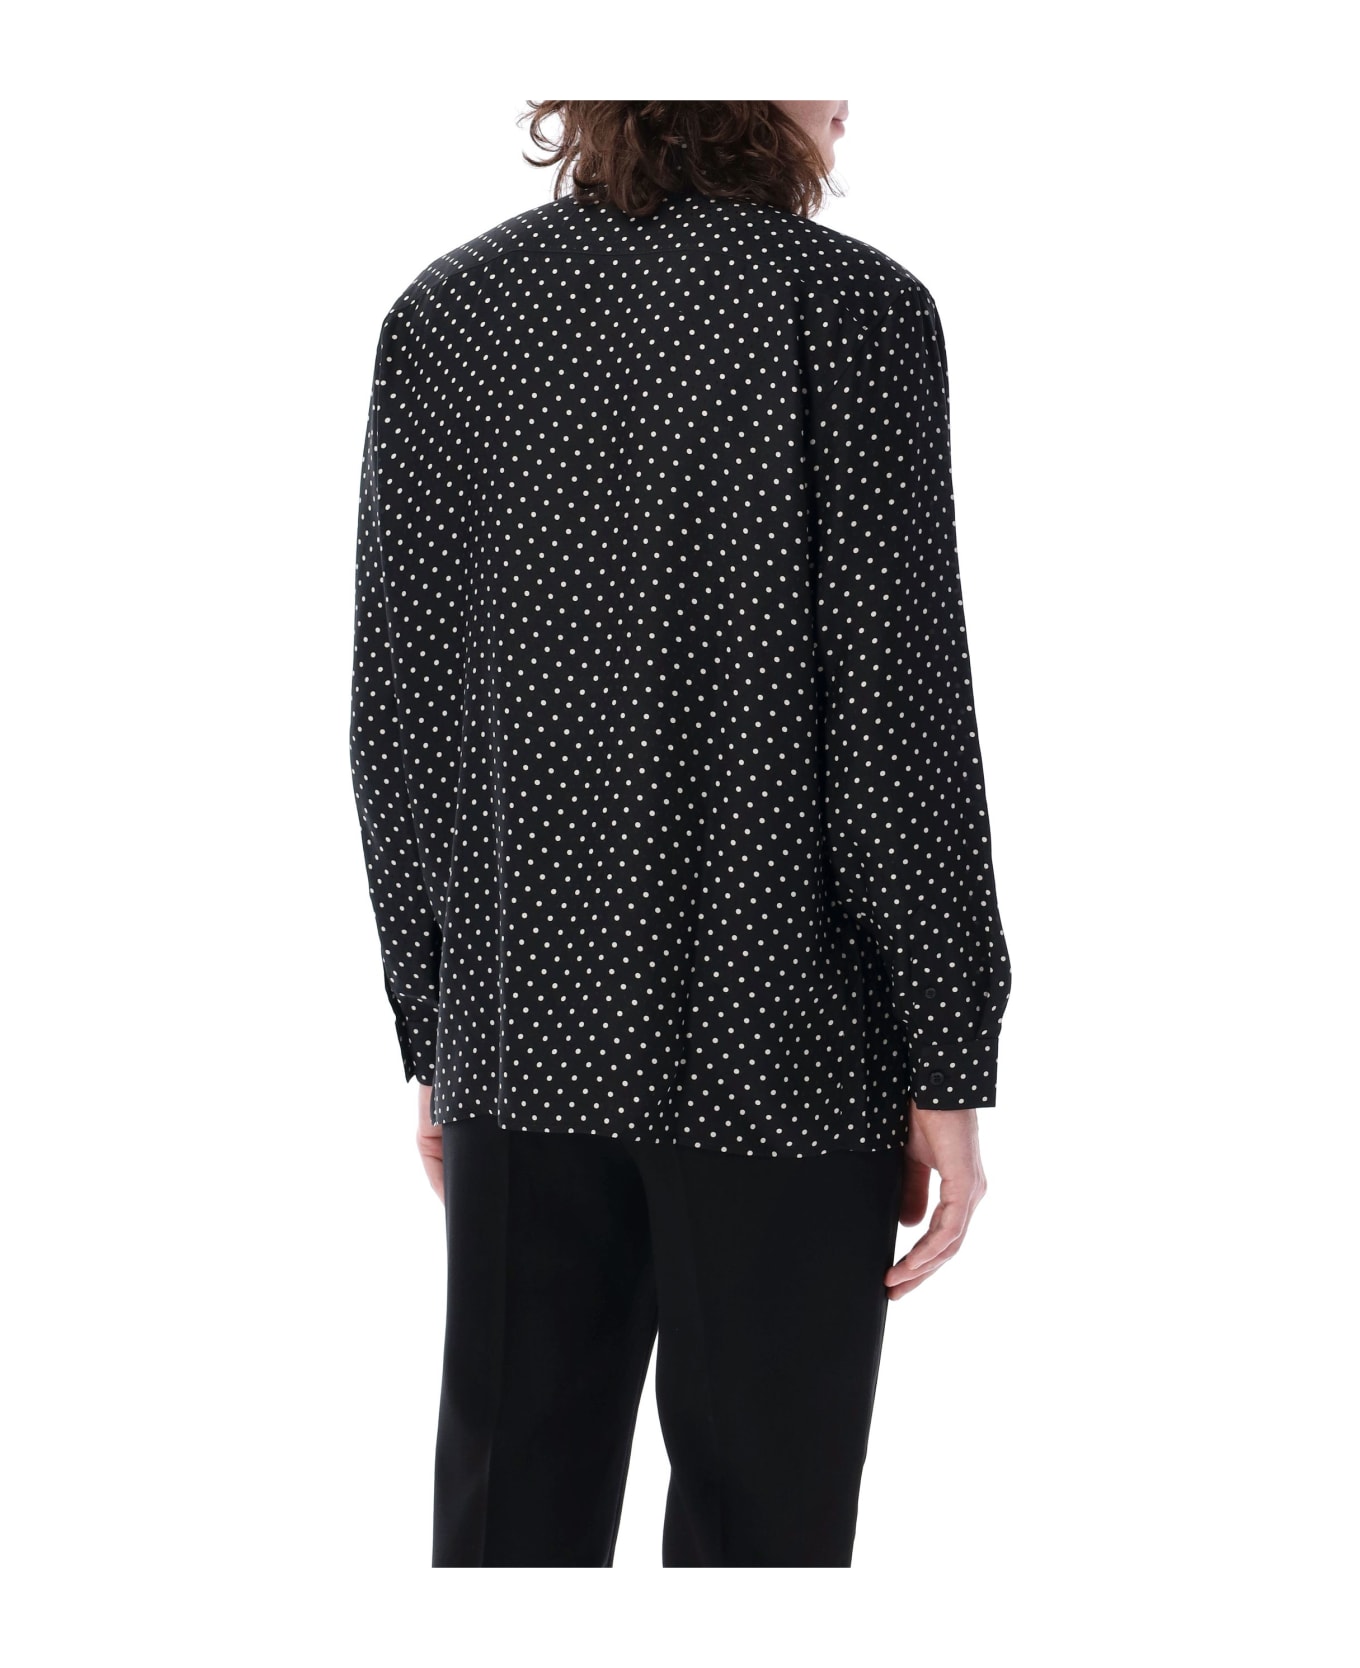 Saint Laurent Dotted Shirt - BLACK CRAIE シャツ